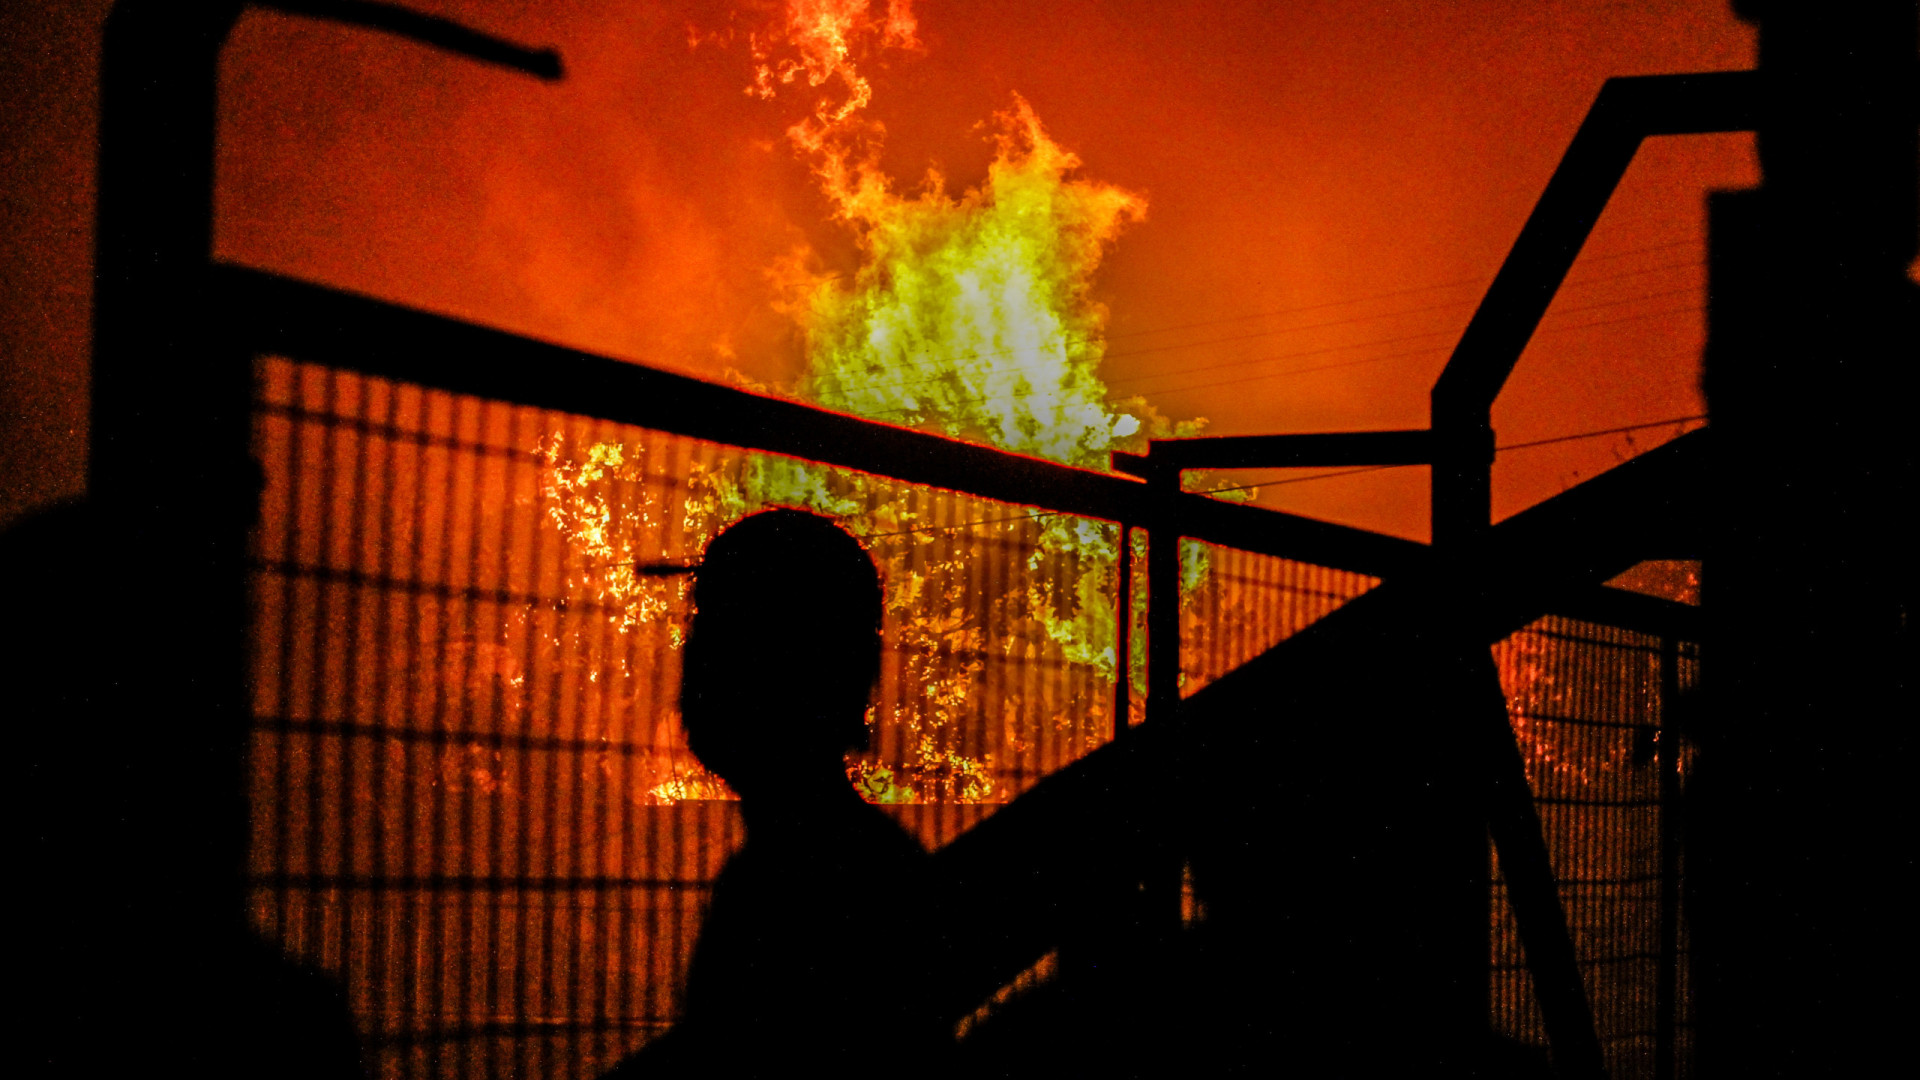 Incêndio atinge tenda de apoio do Lollapalooza, em Interlagos